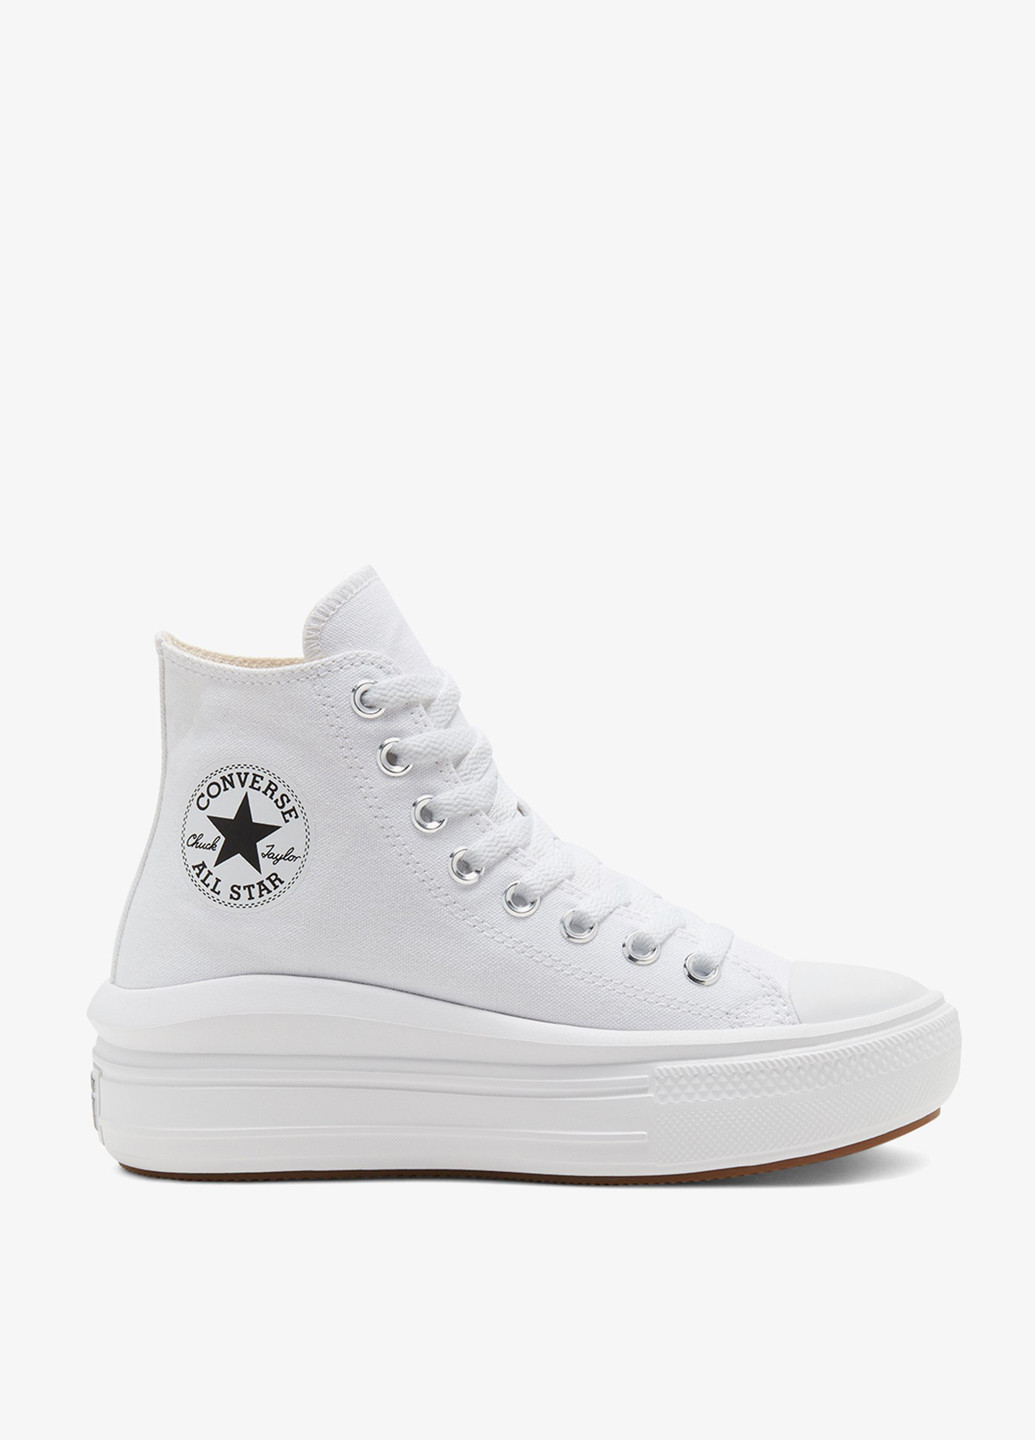 Белые кеды Converse CHUCK TAYLOR ALL STAR MOVE с логотипом, с белой подошвой